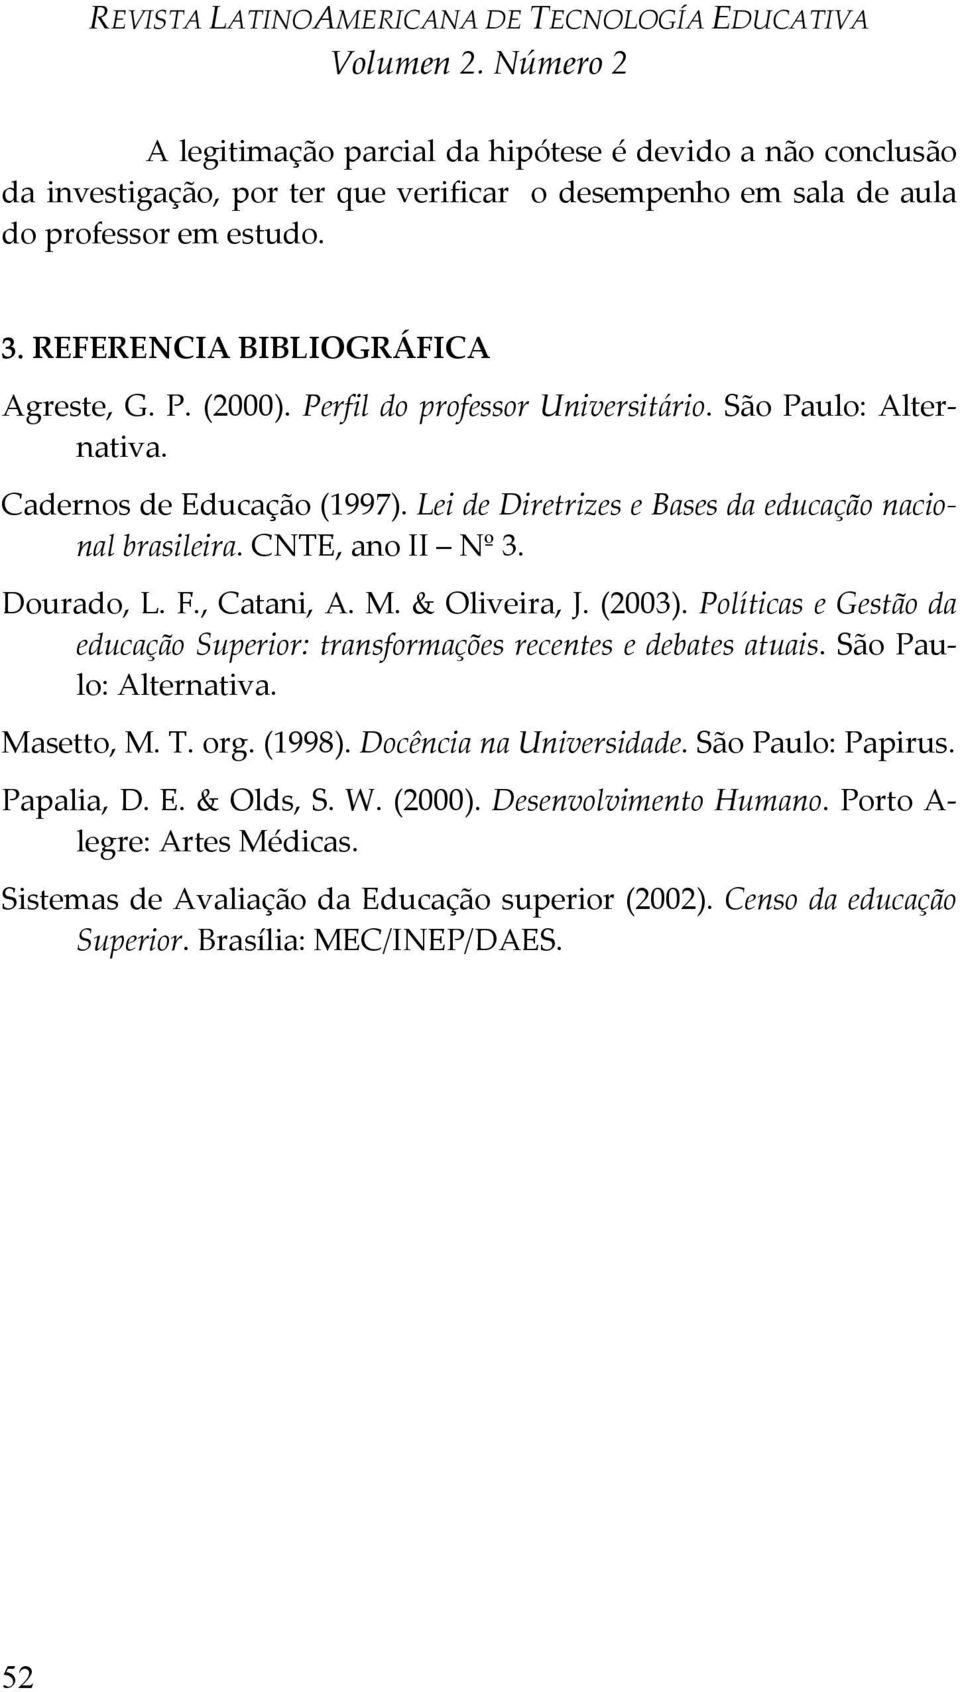 M. & Oliveira, J. (2003). Políticas e Gestão da educação Superior: transformações recentes e debates atuais. São Paulo: Alternativa. Masetto, M. T. org. (1998). Docência na Universidade.